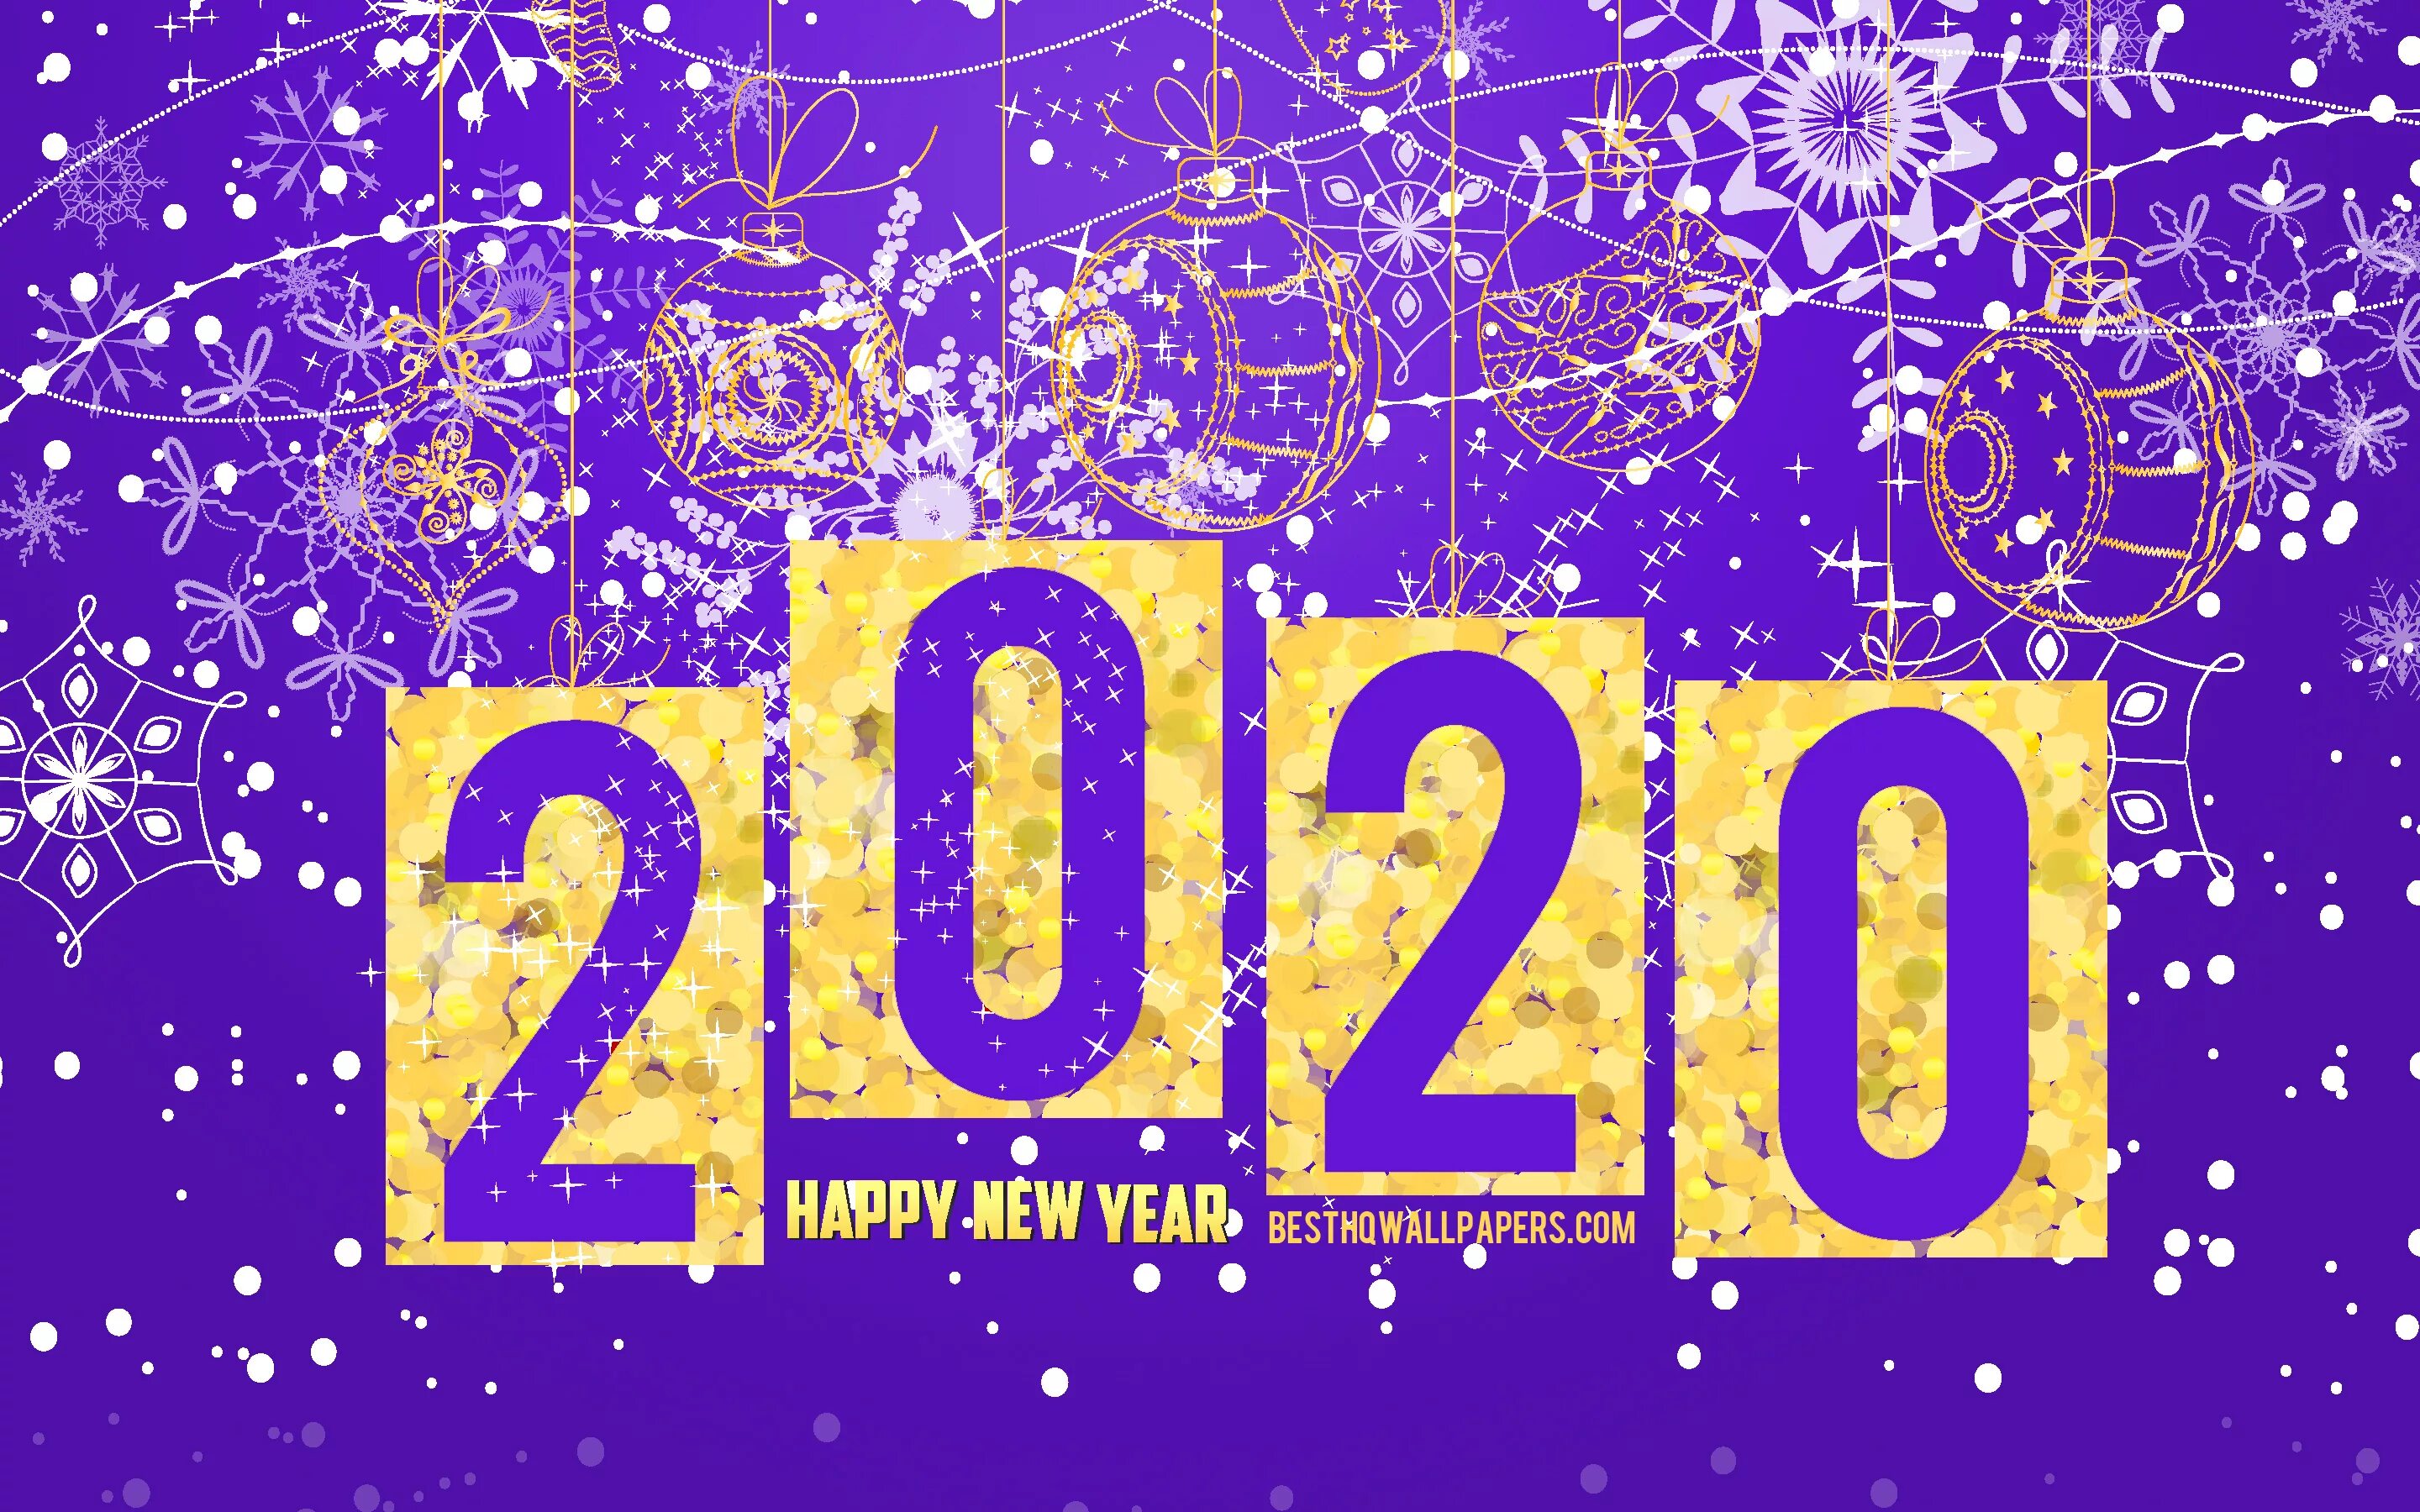 Новый год 2020 варианты. Обои новогодние 2020. Новый год фон 2020. Обои на рабочий стол 2020. Новогодние картинки 2020 на рабочий стол.